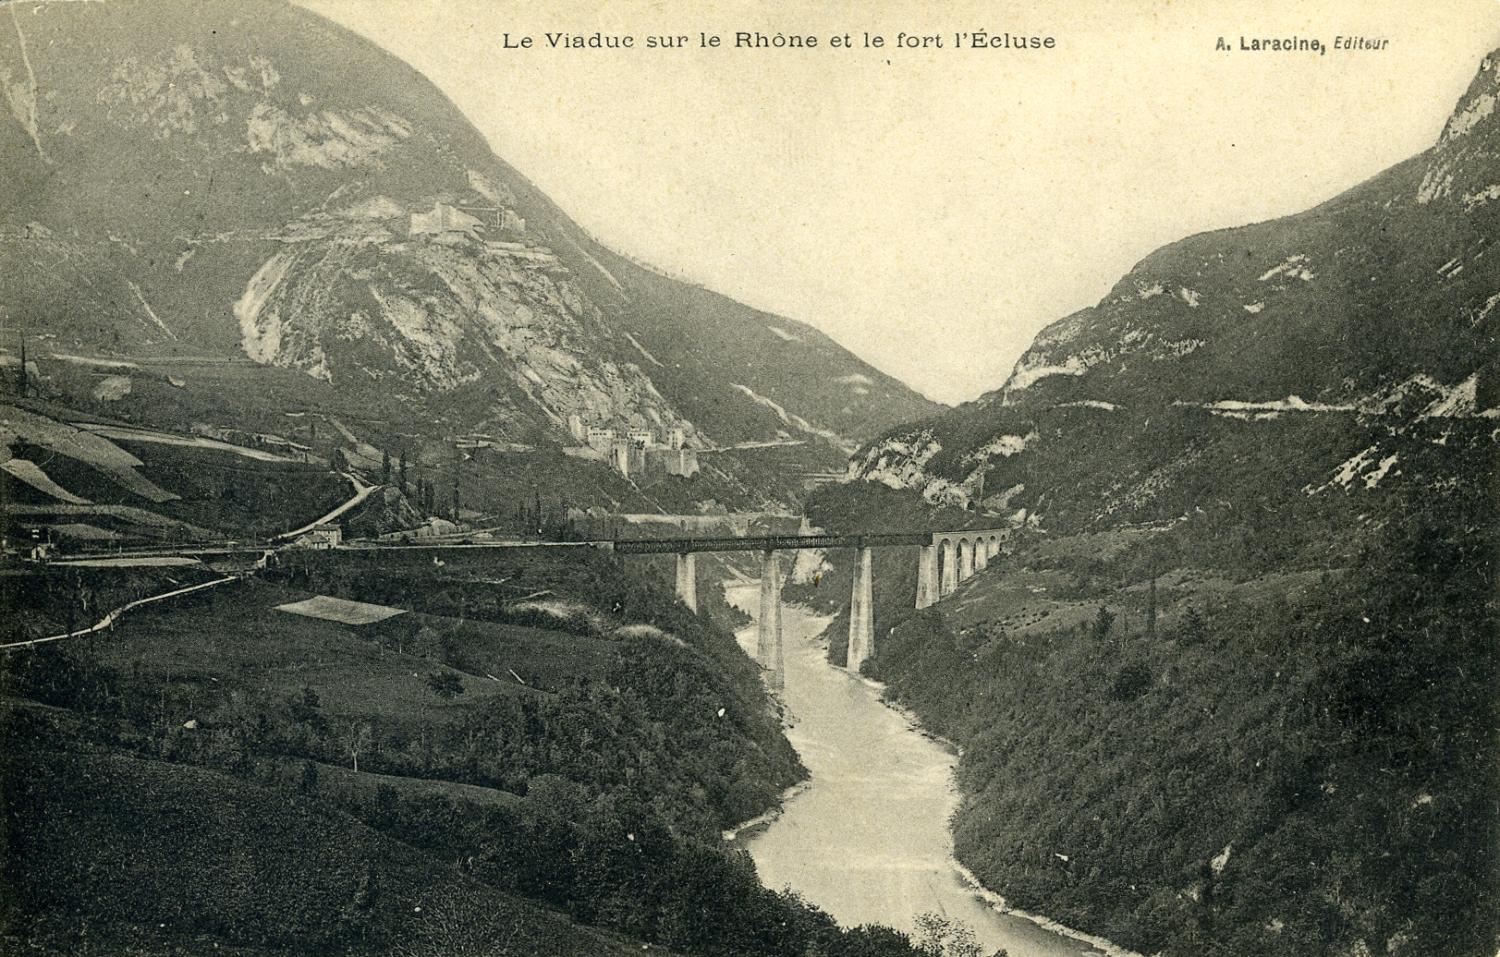 Le Viaduc sur le Rhône et le fort l'Ecluse..